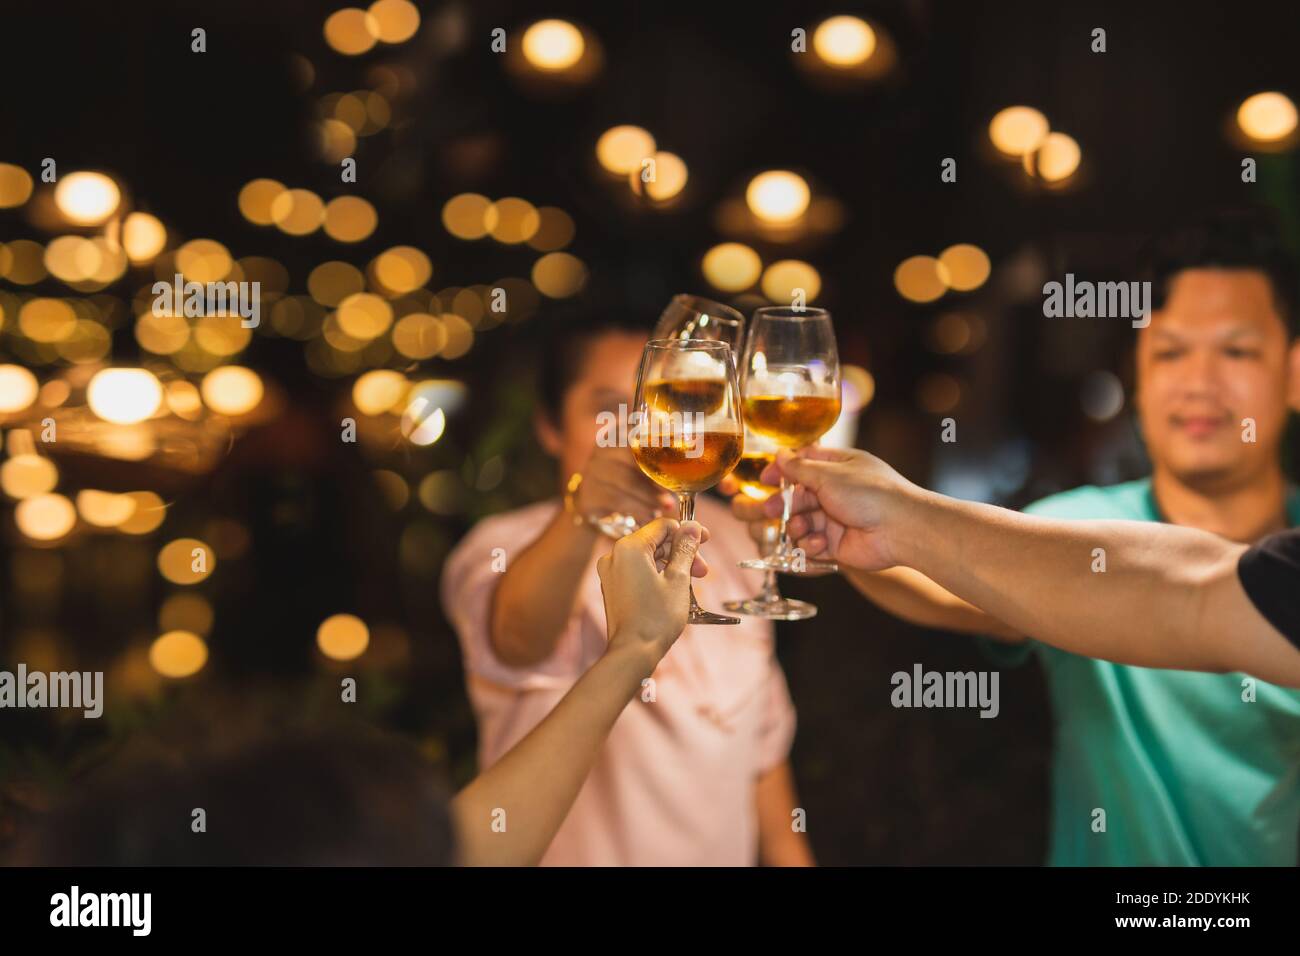 Aufnahme in hohen iso mit wenig Licht Gruppe von Freunden Toasting mit Wein für die Feier. Stockfoto